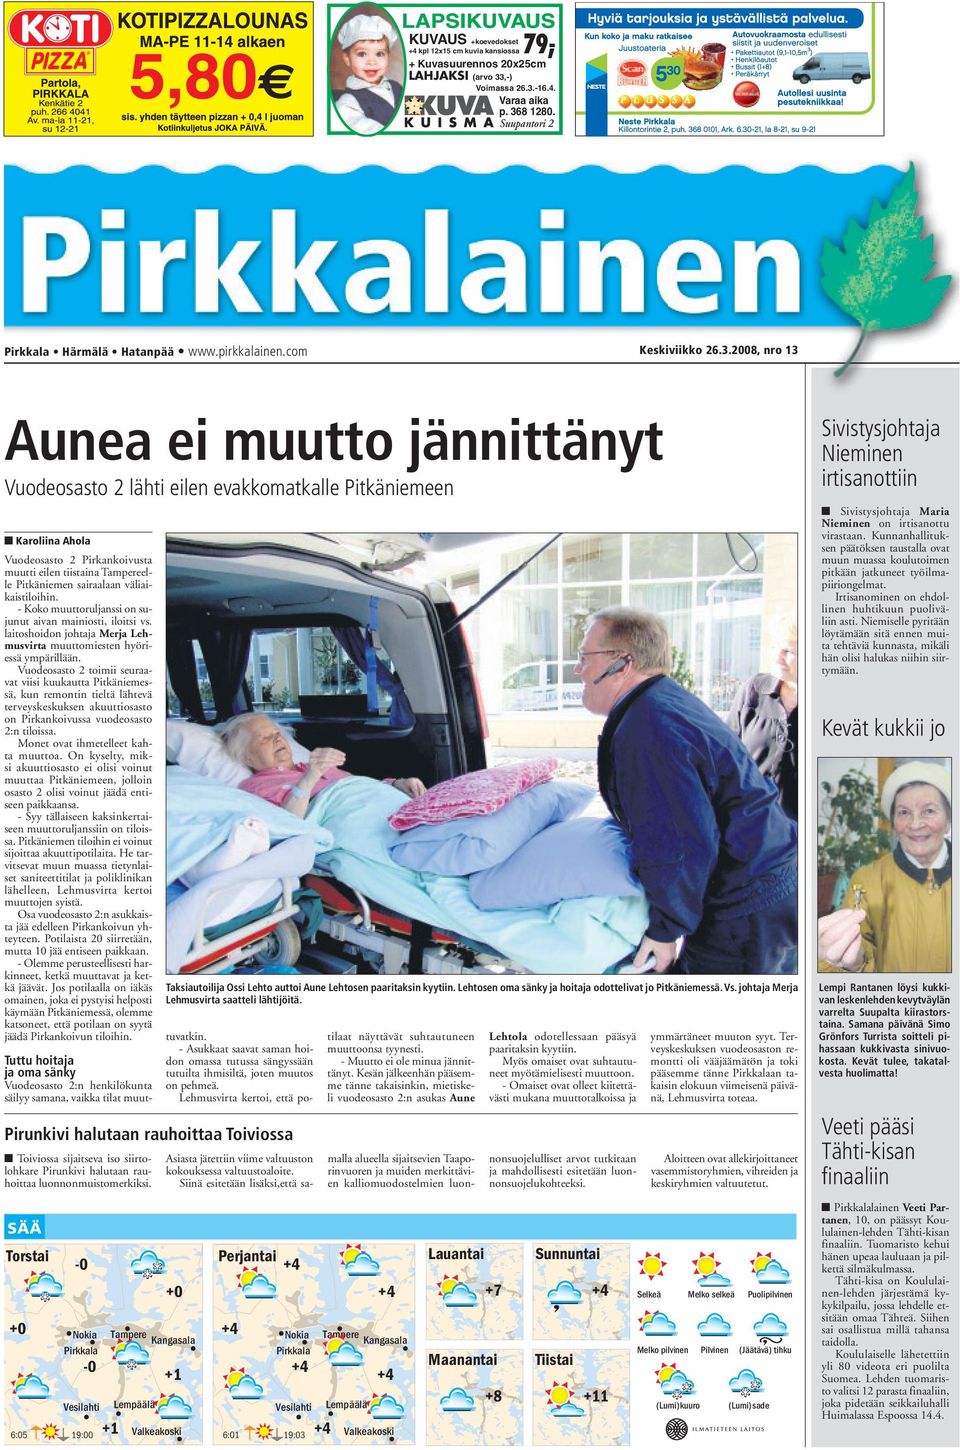 2008, nro 13 Aunea ei muutto jännittänyt Vuodeosasto 2 lähti eilen evakkomatkalle Pitkäniemeen Karoliina Ahola Vuodeosasto 2 Pirkankoivusta muutti eilen tiistaina Tampereelle Pitkäniemen sairaalaan